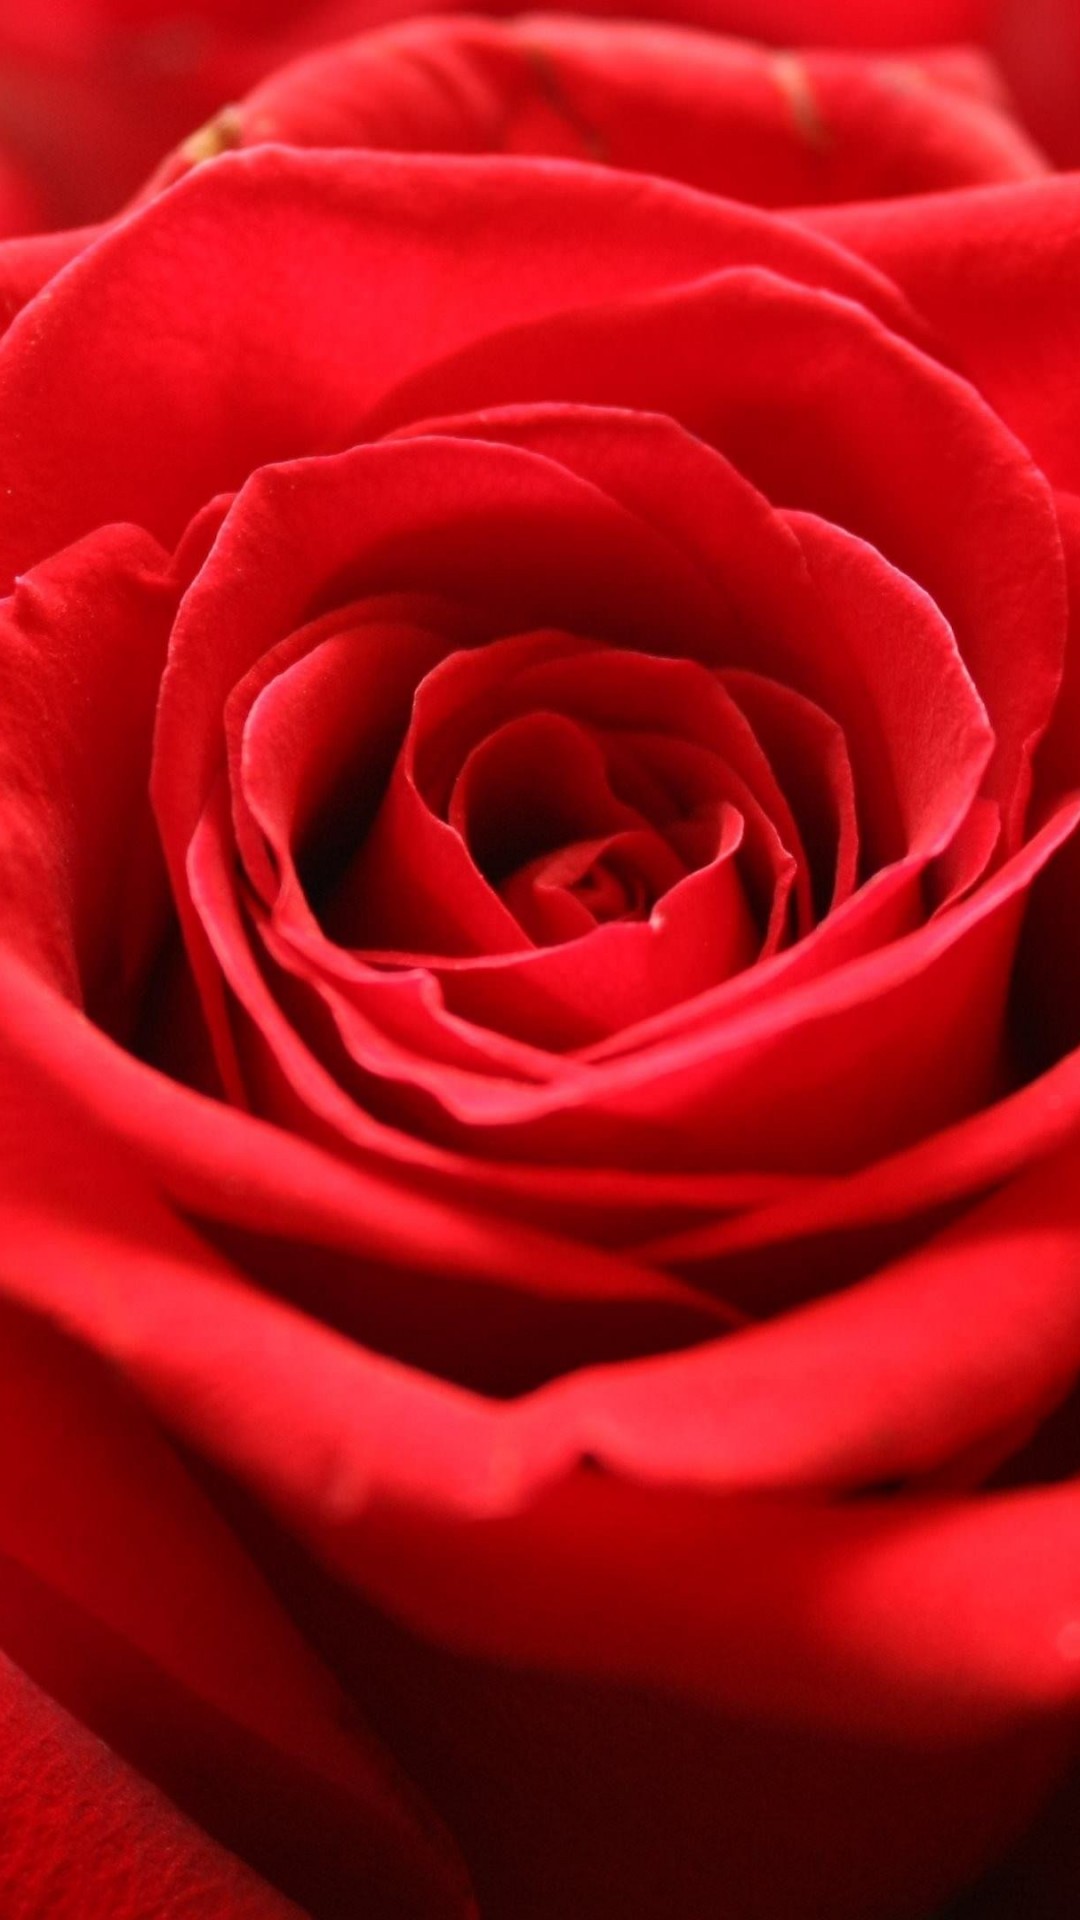 Red Rose Wallpaper for LG G2